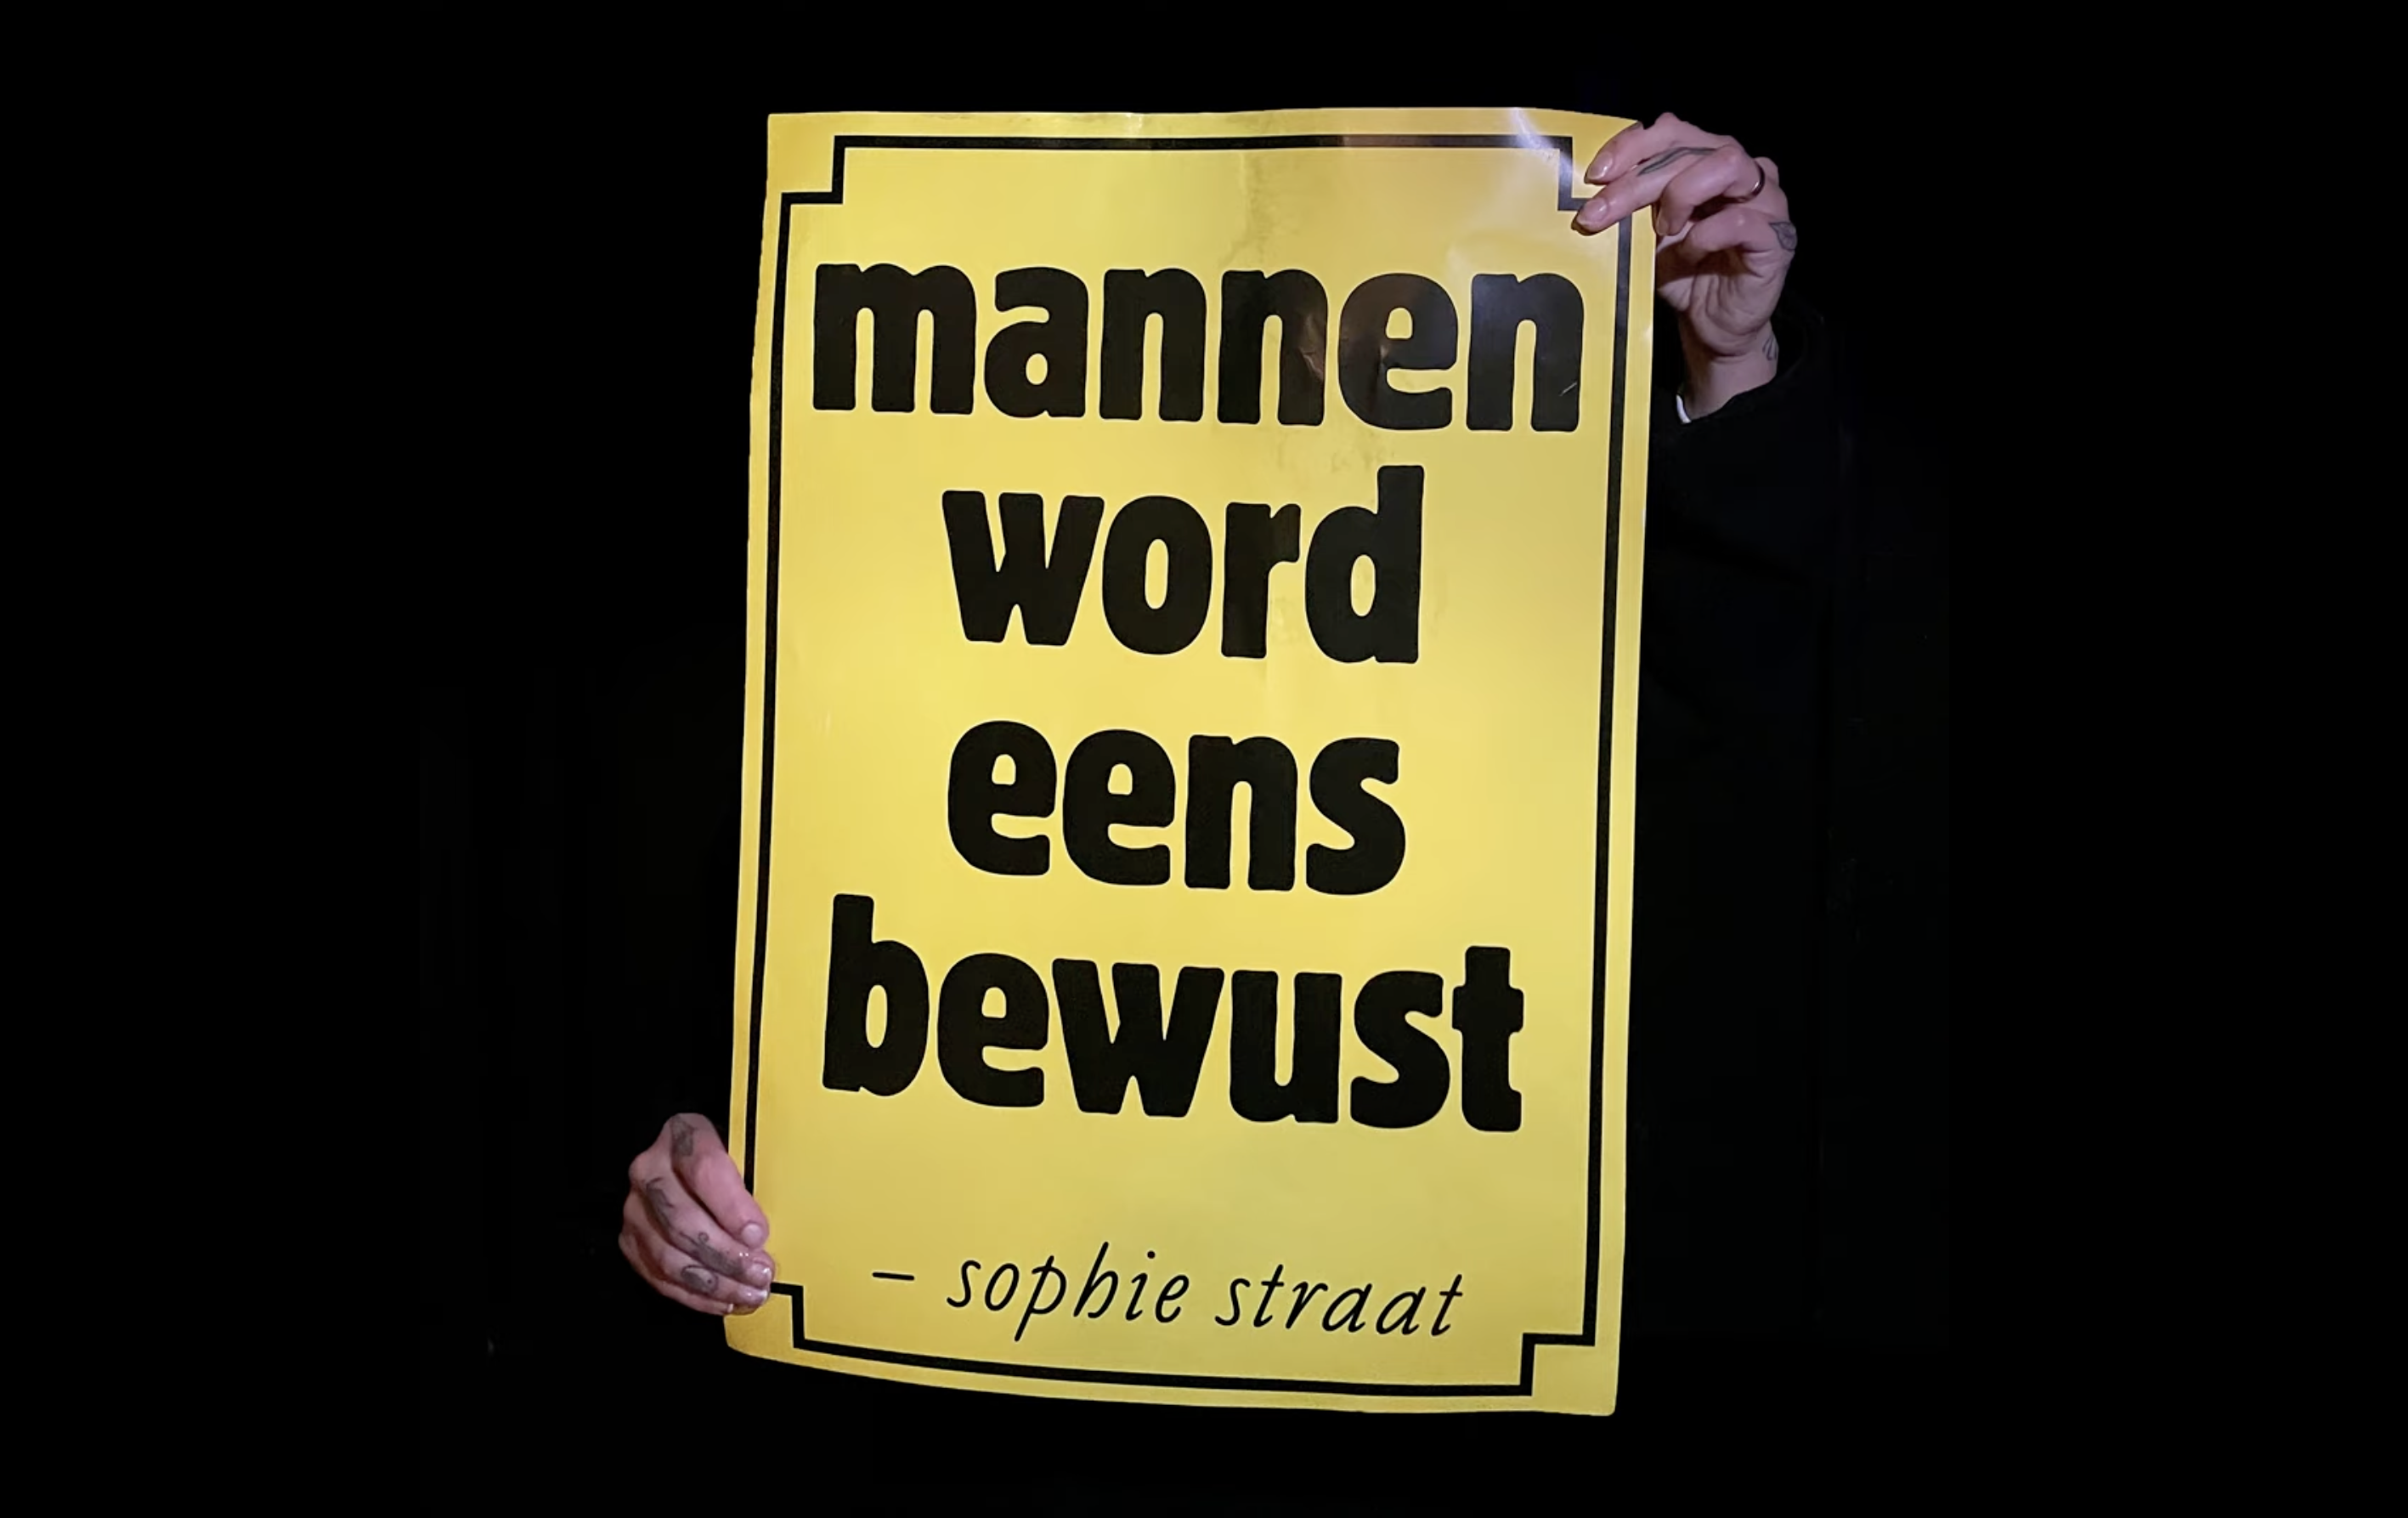 Sophie Straat's protestlied 'Mannen word eens bewust' cover